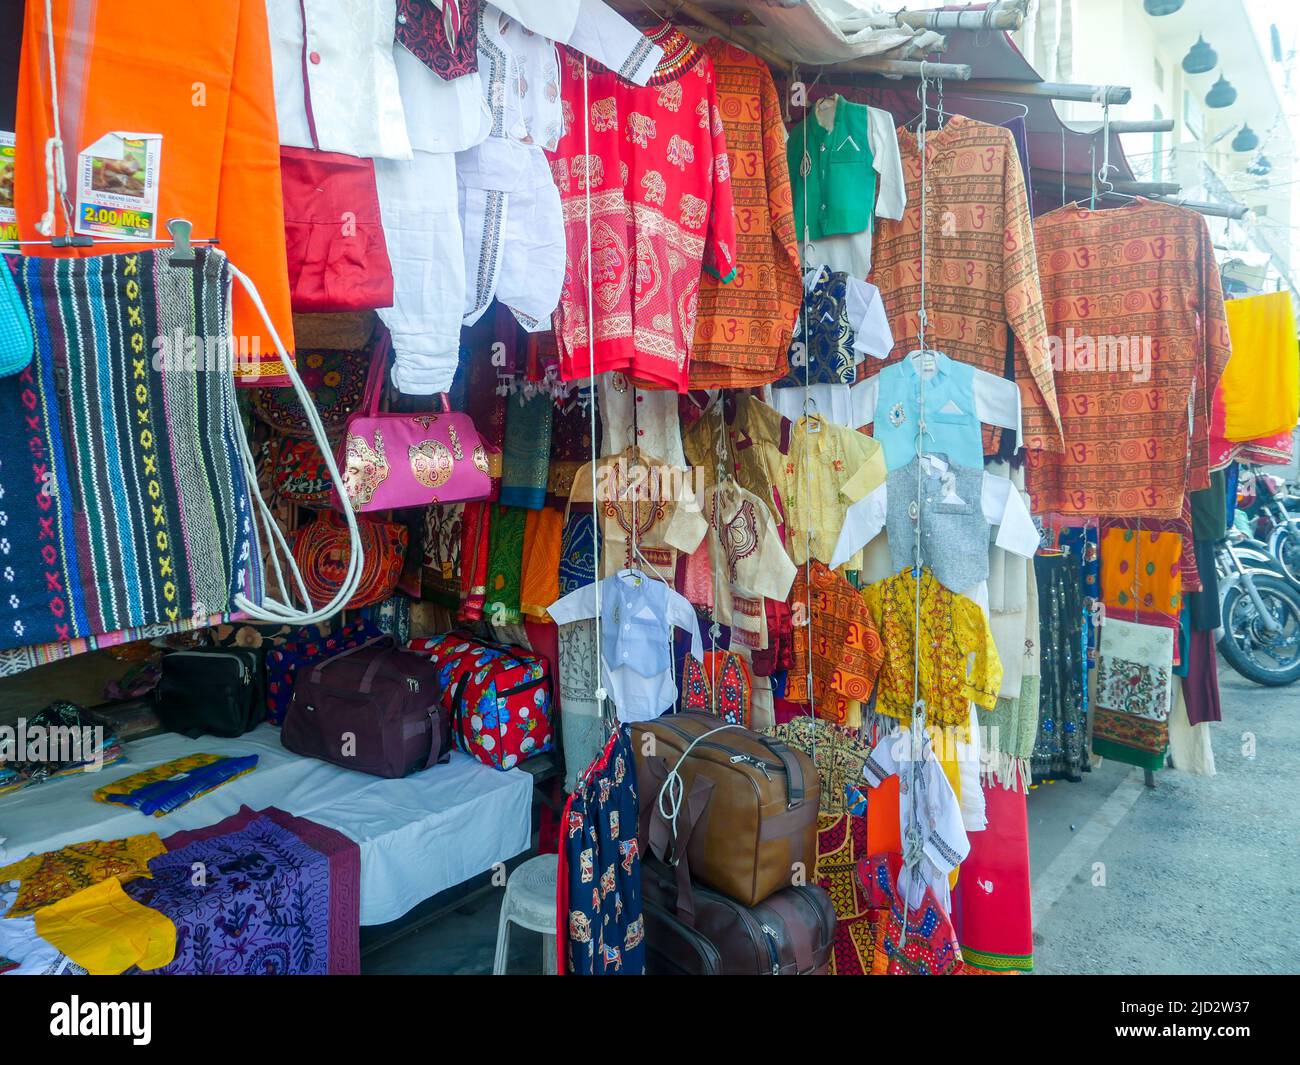 Pushkar, Rajasthan Inde - 4 novembre 2019 : marché local de vente de vêtements, t-shirts, vêtements et vêtements, vêtements pour hommes suspendus en magasin. Banque D'Images